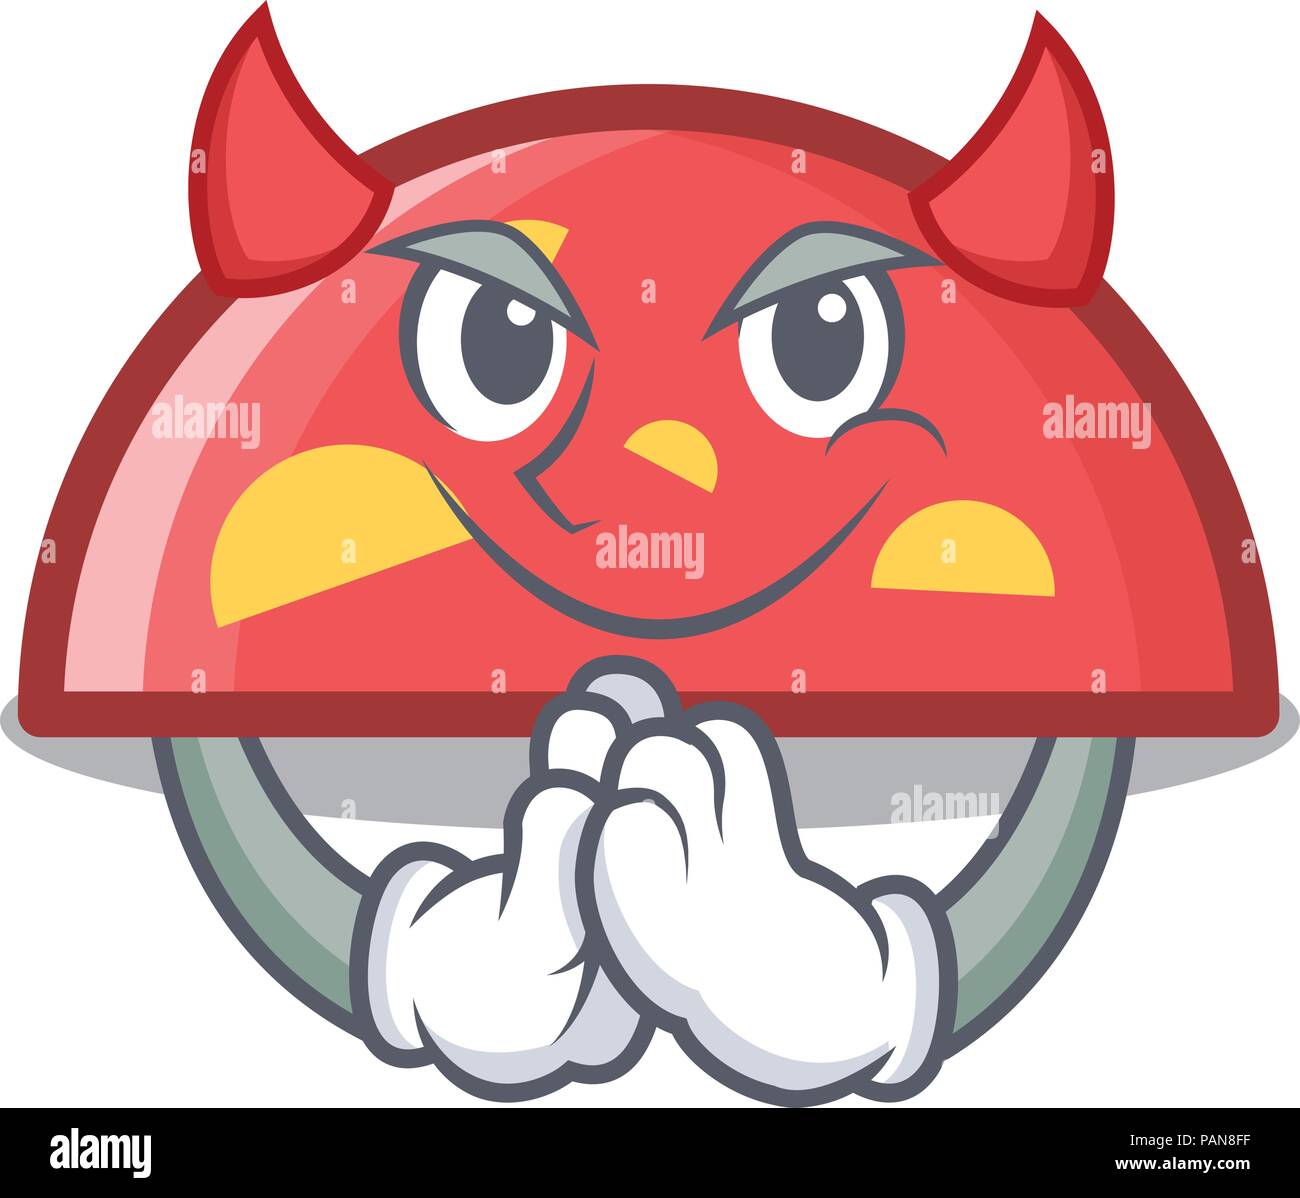 Devil semicircle mascot cartoon style Stock Vector